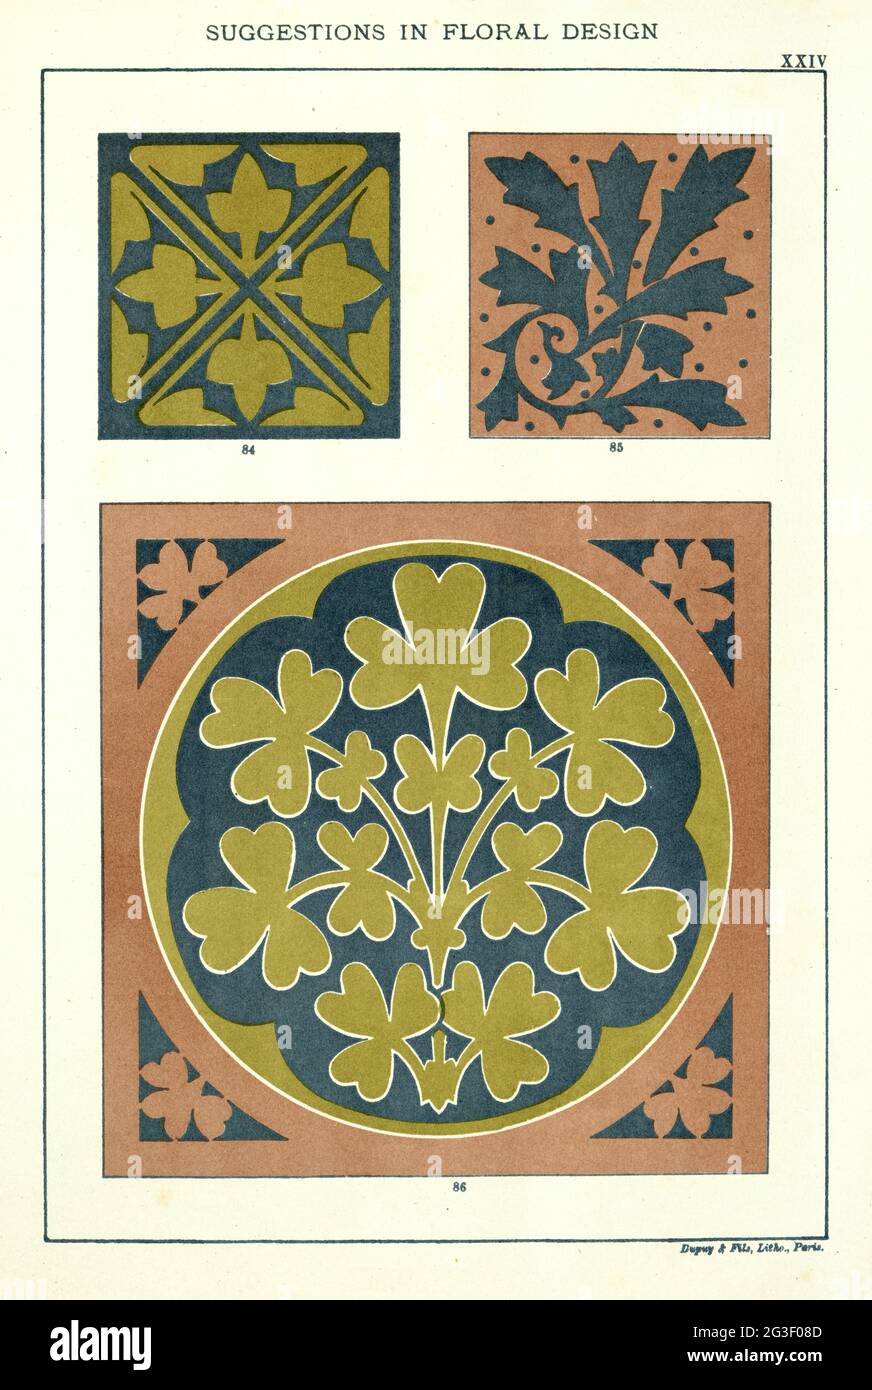 Vorschläge im floralen Design, viktorianisches 19. Jahrhundert Stockfoto